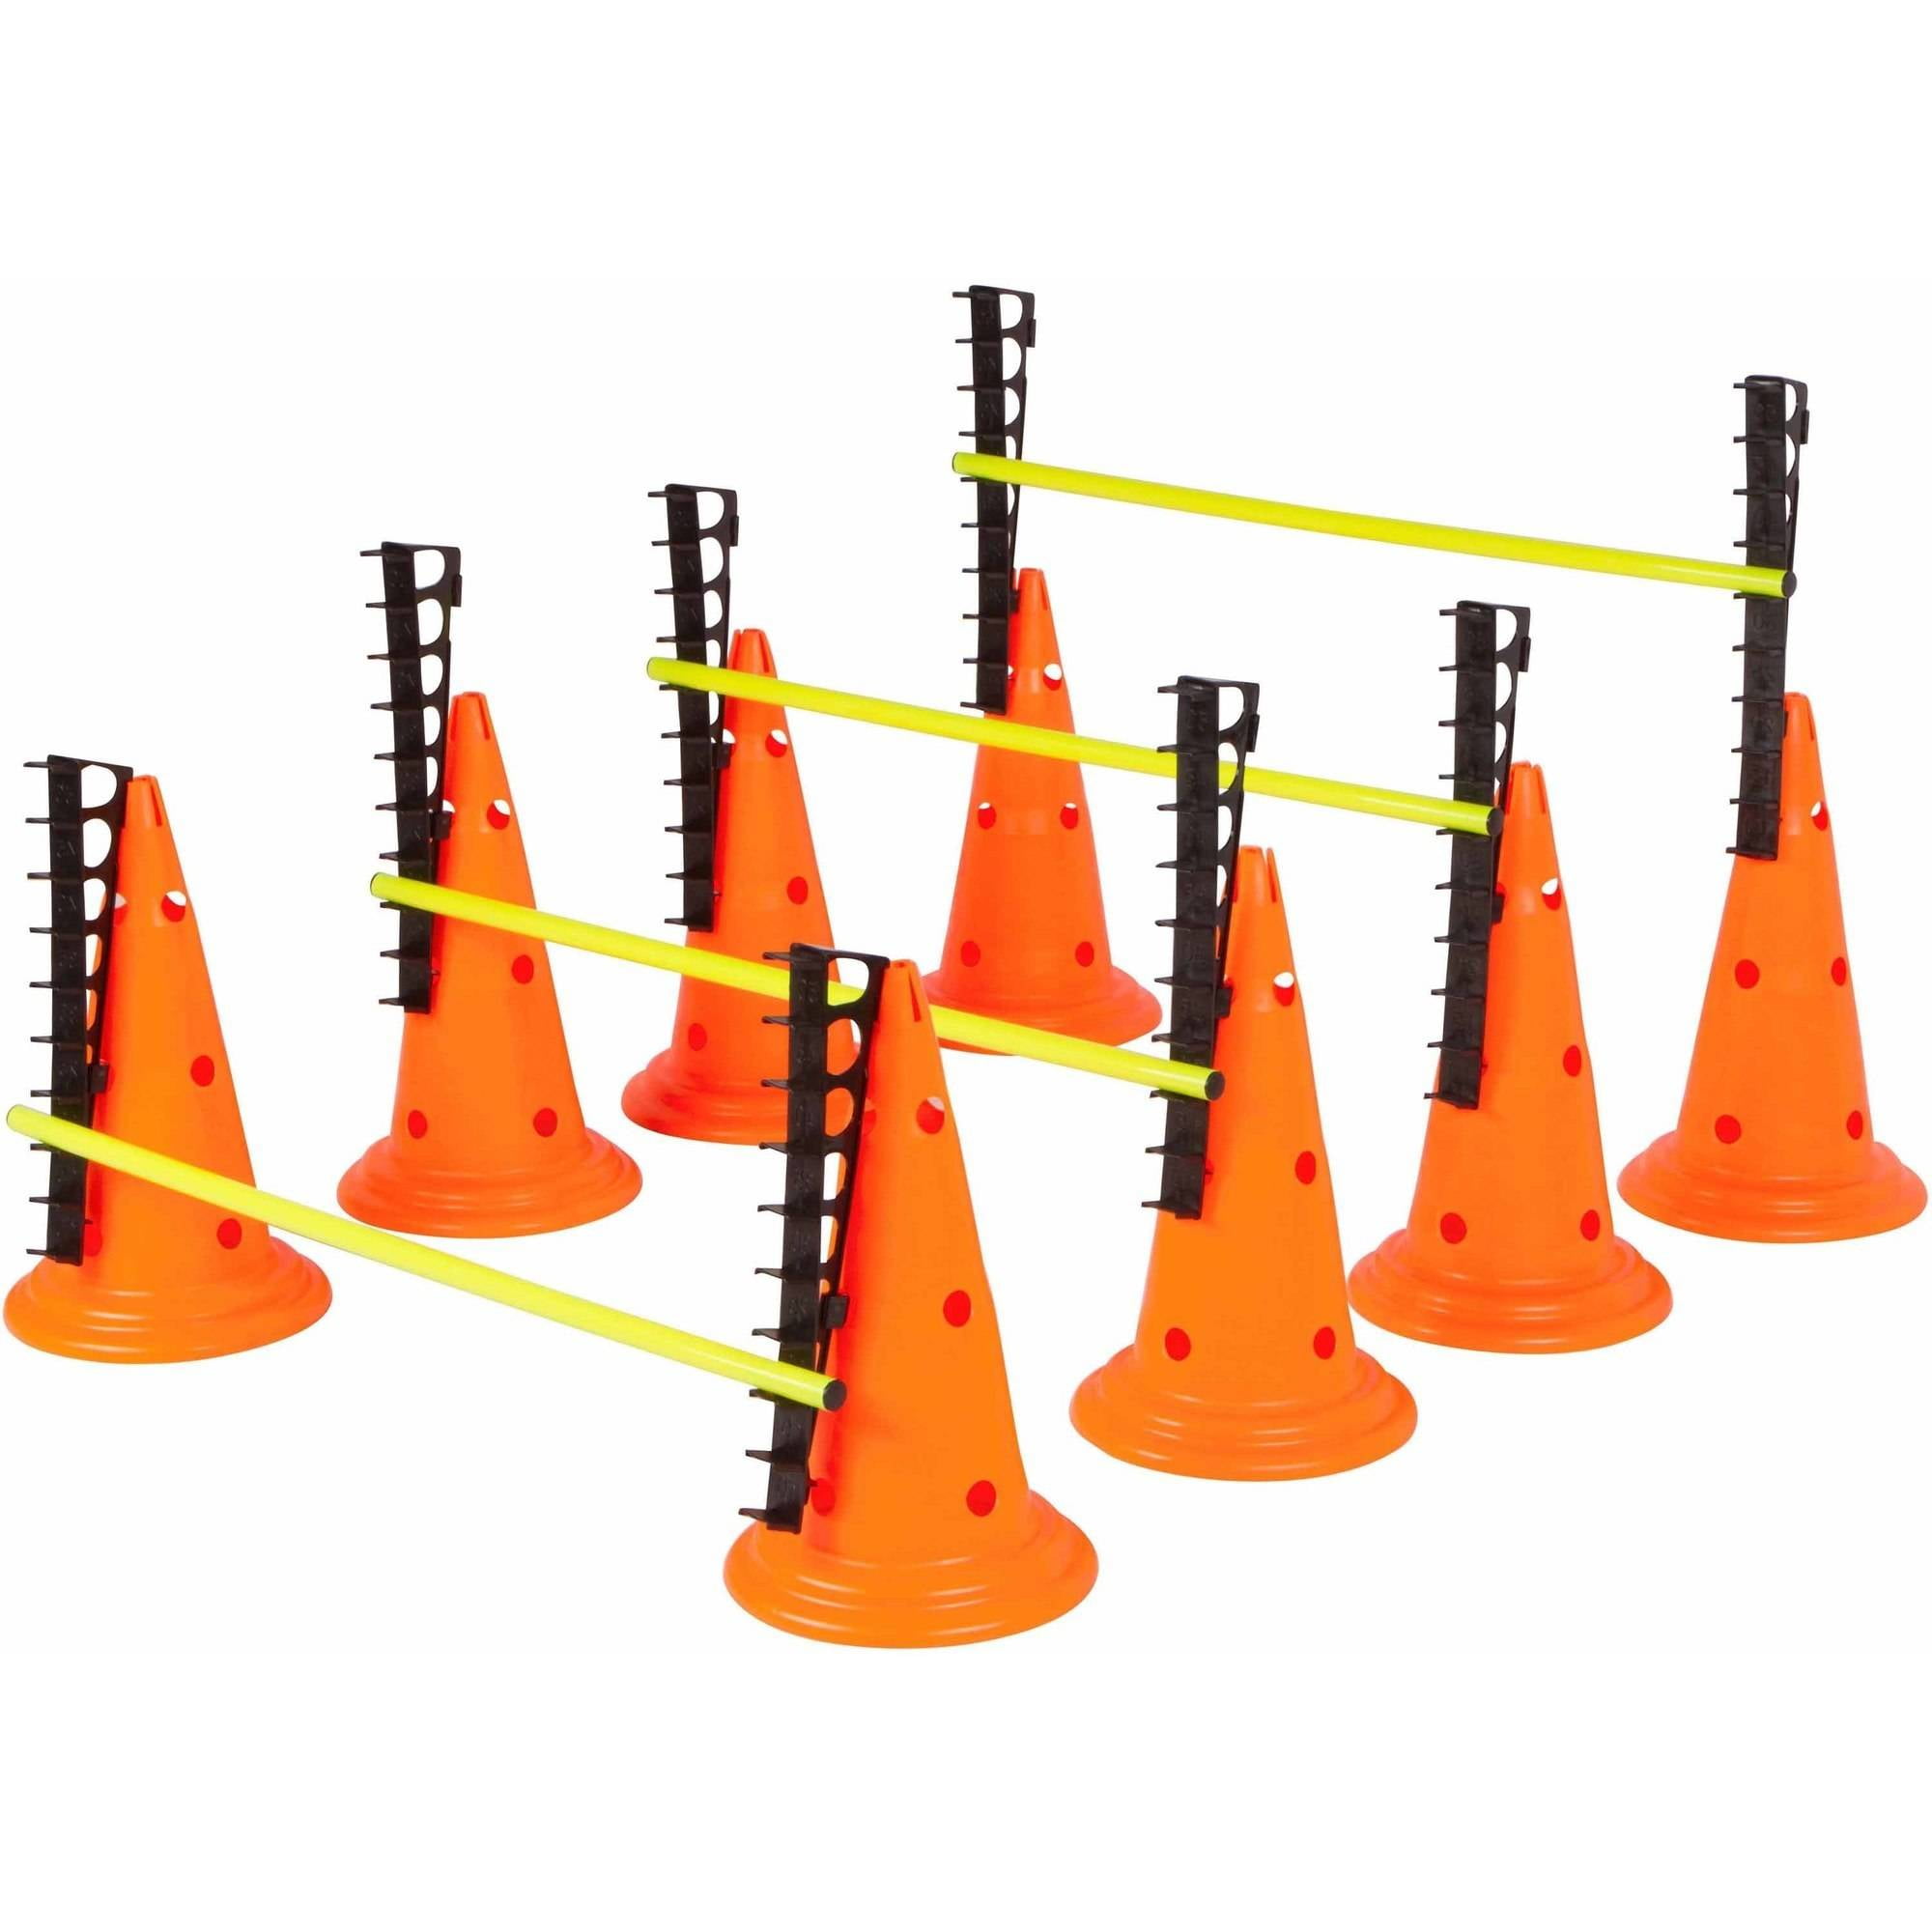 Trademark Innovations 20 Adjustable Hurdle Cone Set 8 Cones and 4 Poles 